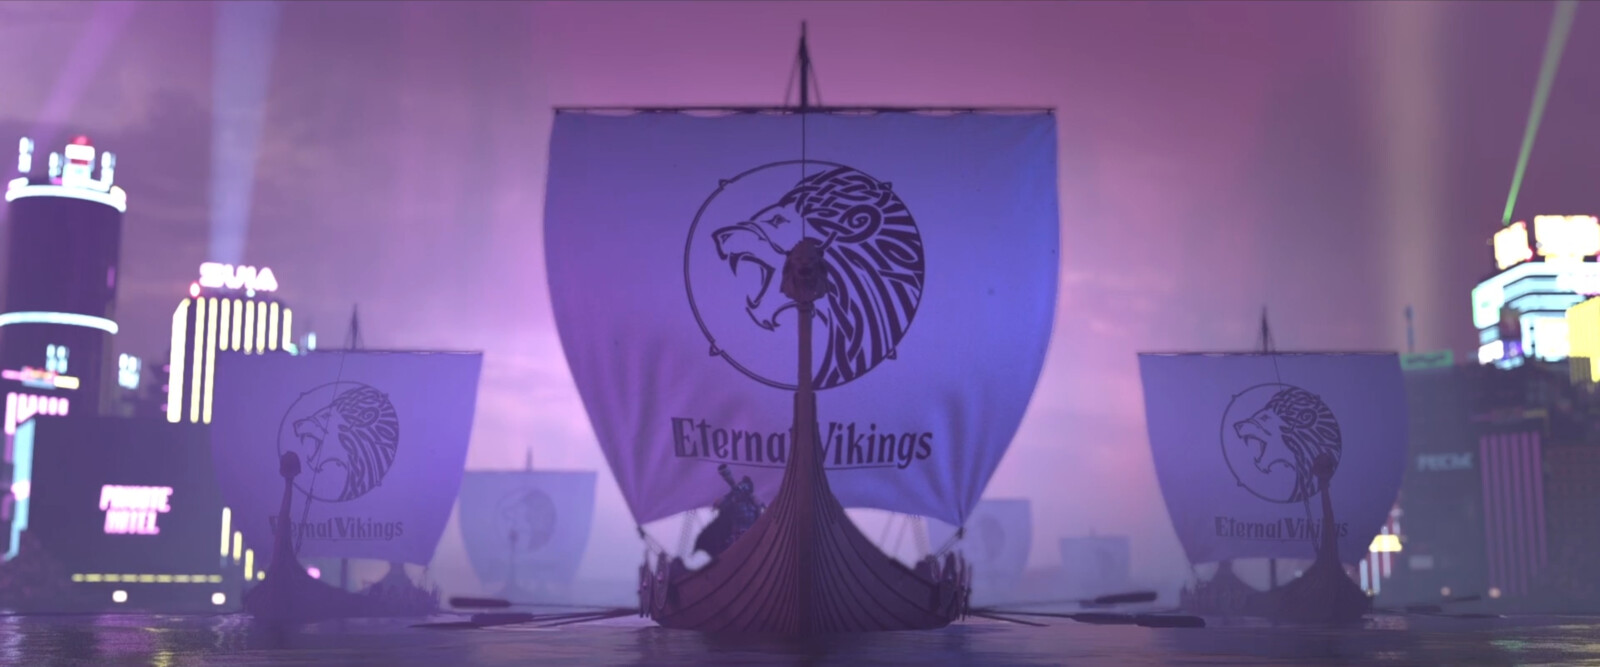 Full Pipeline; Eternal Vikings Trailer